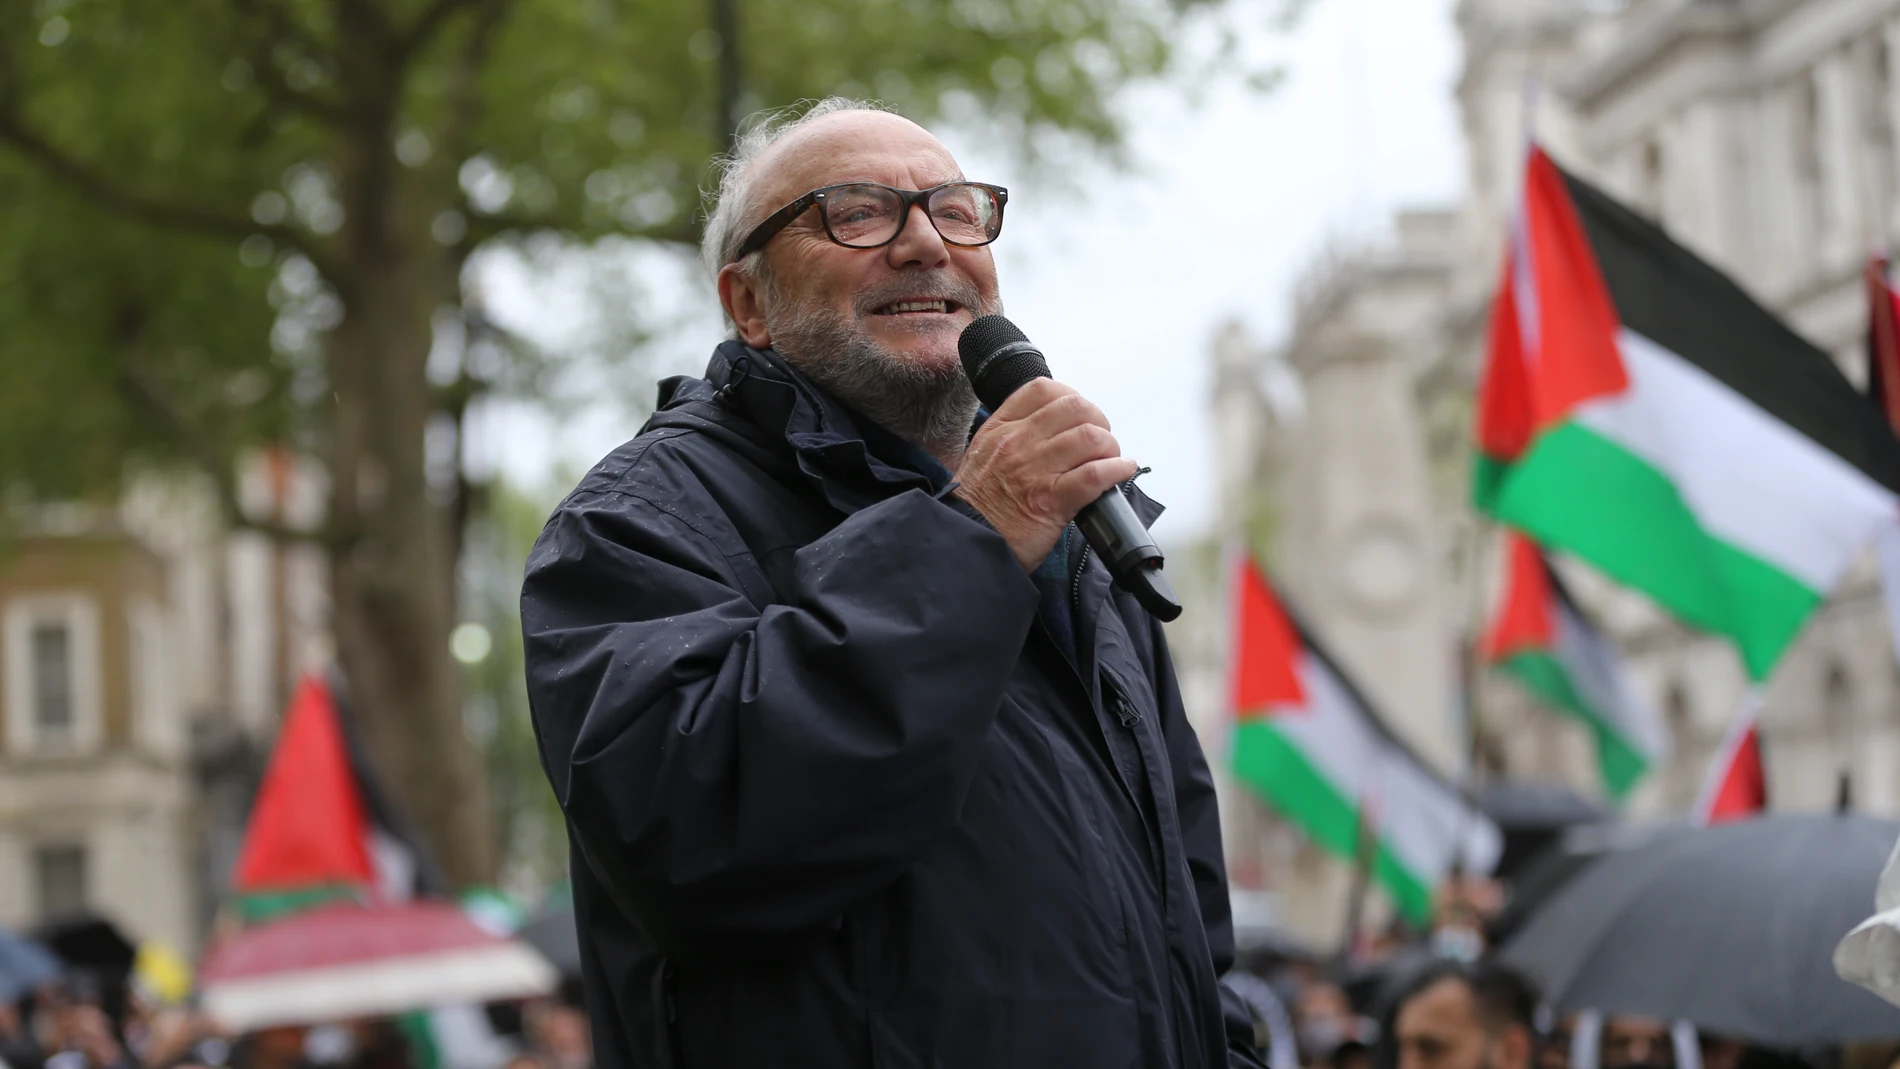 El izquierdista George Galloway durante una manifestación a favor de Palestina (Foto de ARCHIVO)16/05/2021